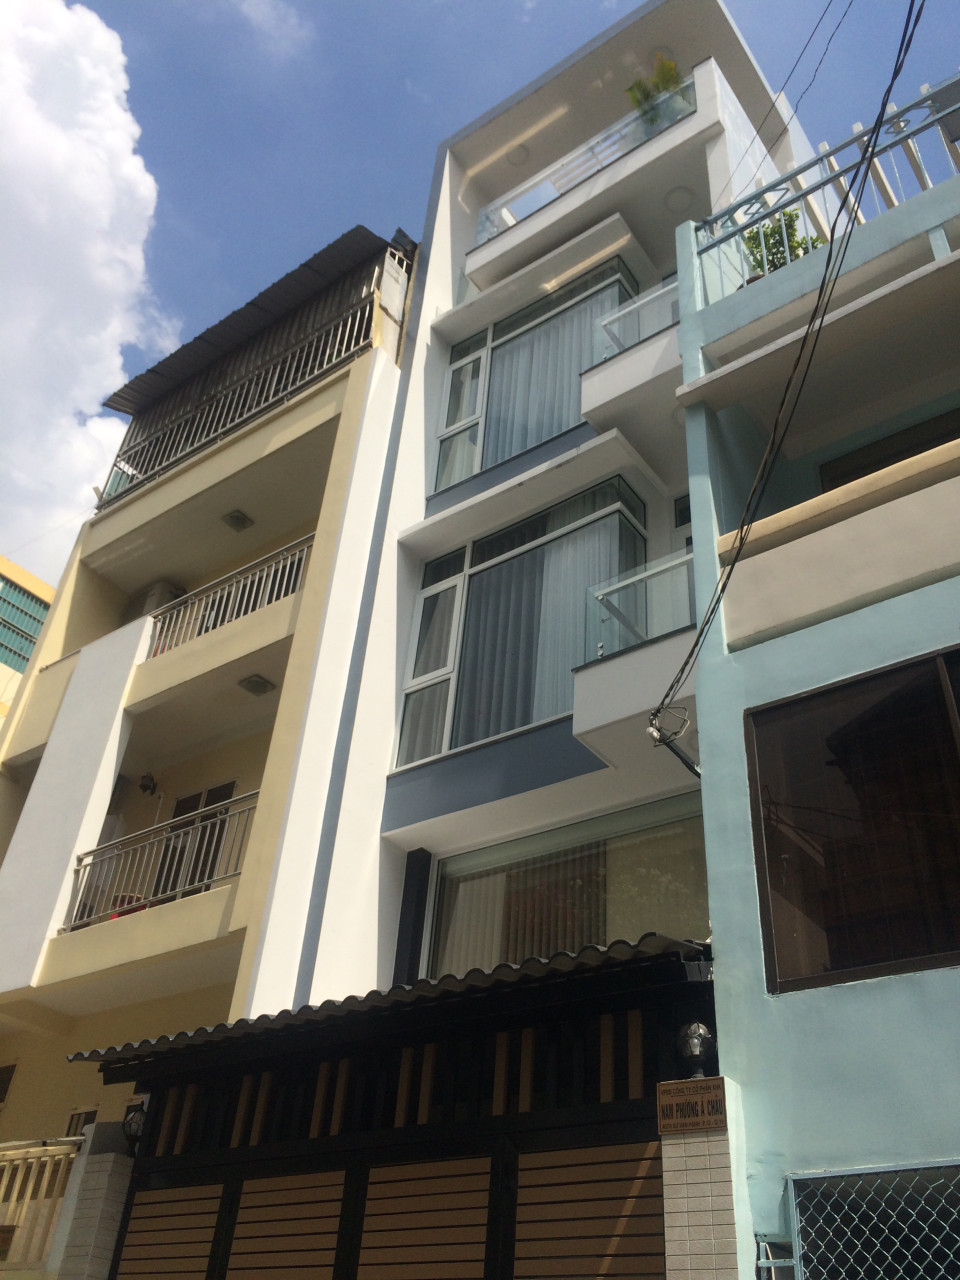 Chủ nhà xoay vốn làm ăn nên cần bán rất gấp căn nhà Sau lưng Mt đường Phan Văn Trị.